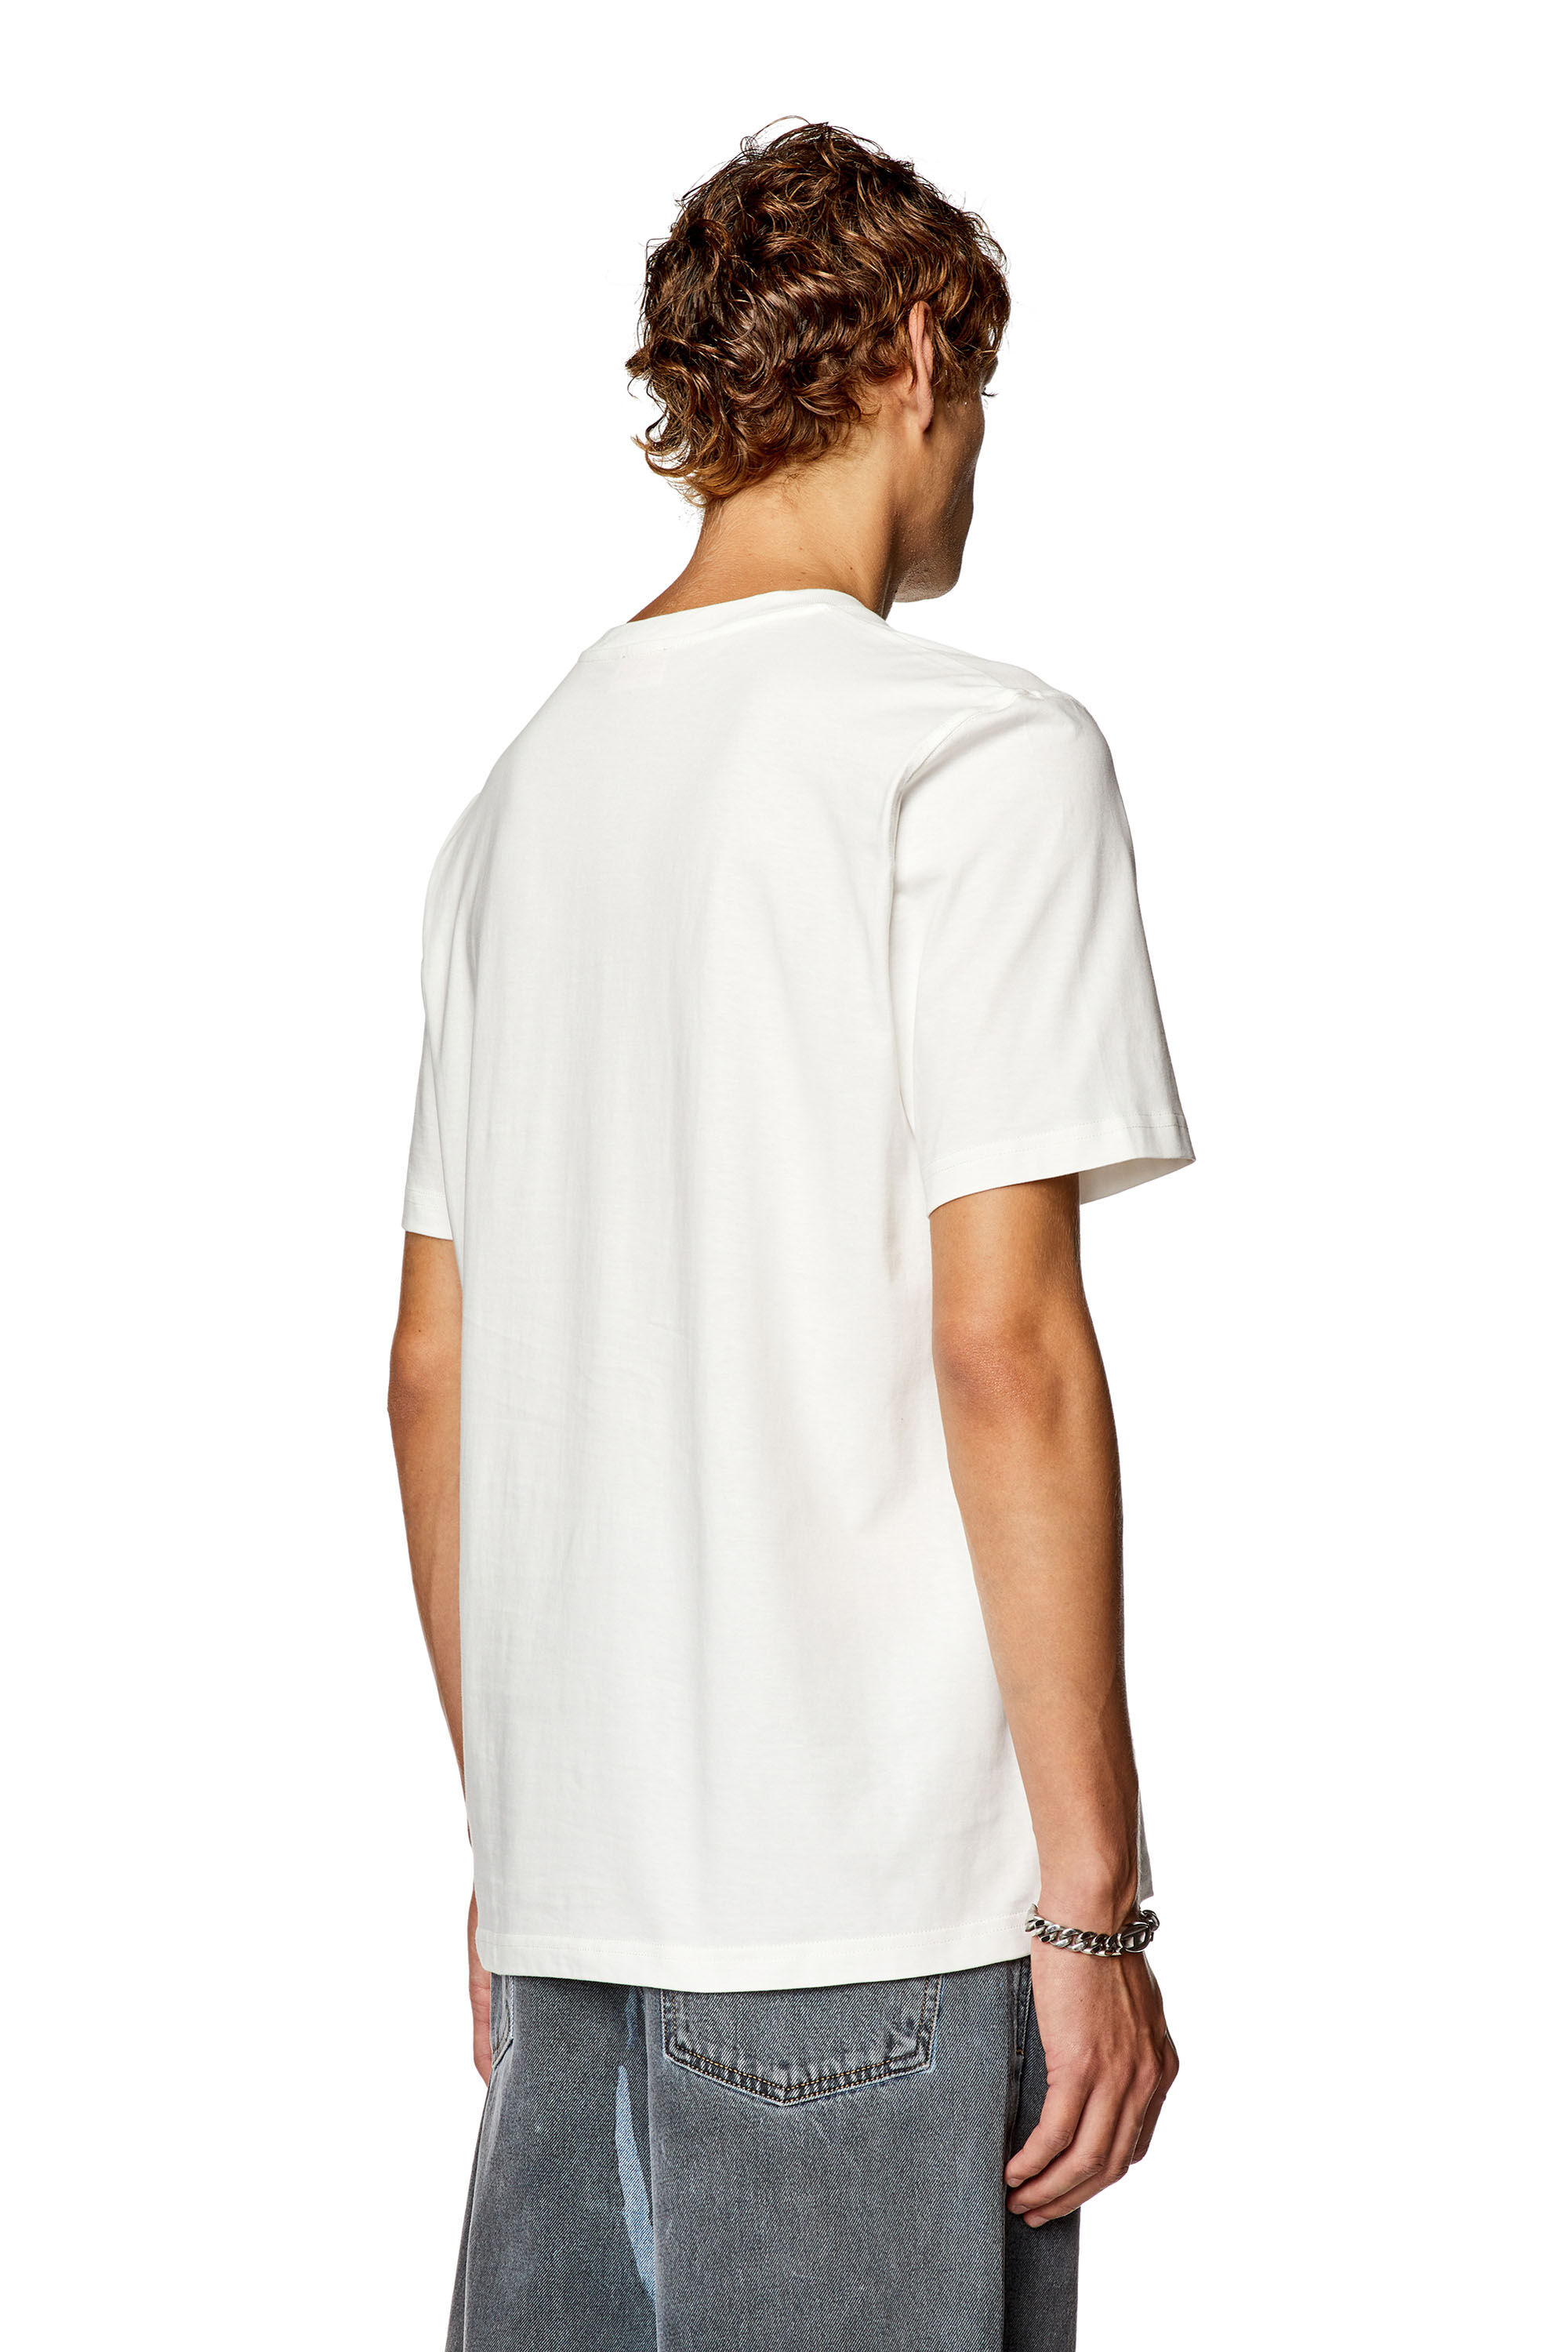 Men's T-shirt with Diesel bag print | T-JUST-N18 Diesel